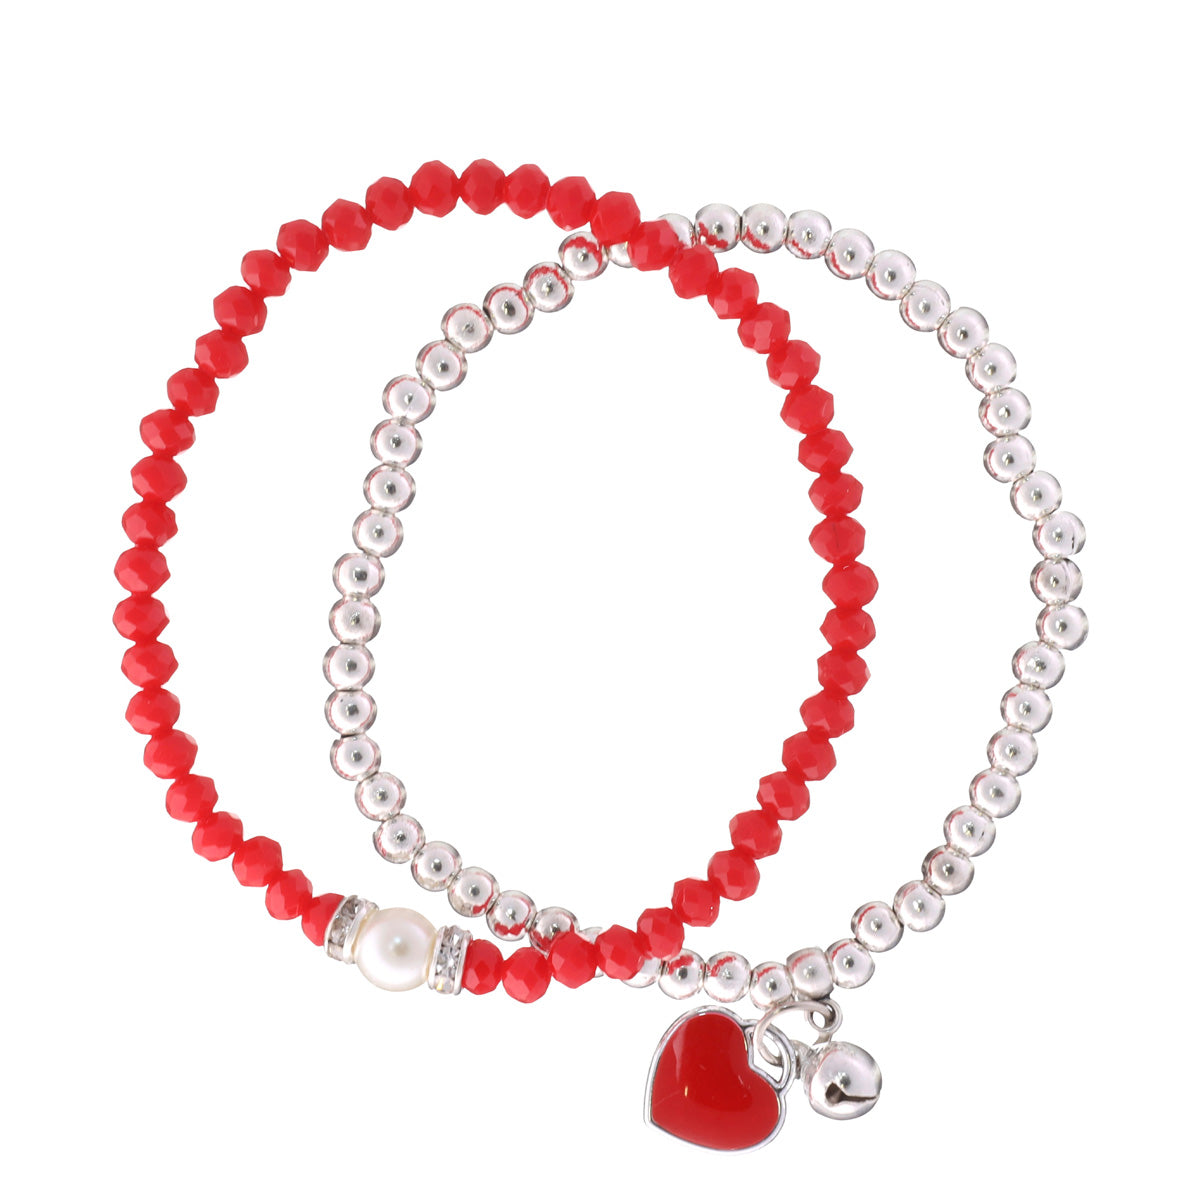 Flexible bracelet with heart pendant 2pcs